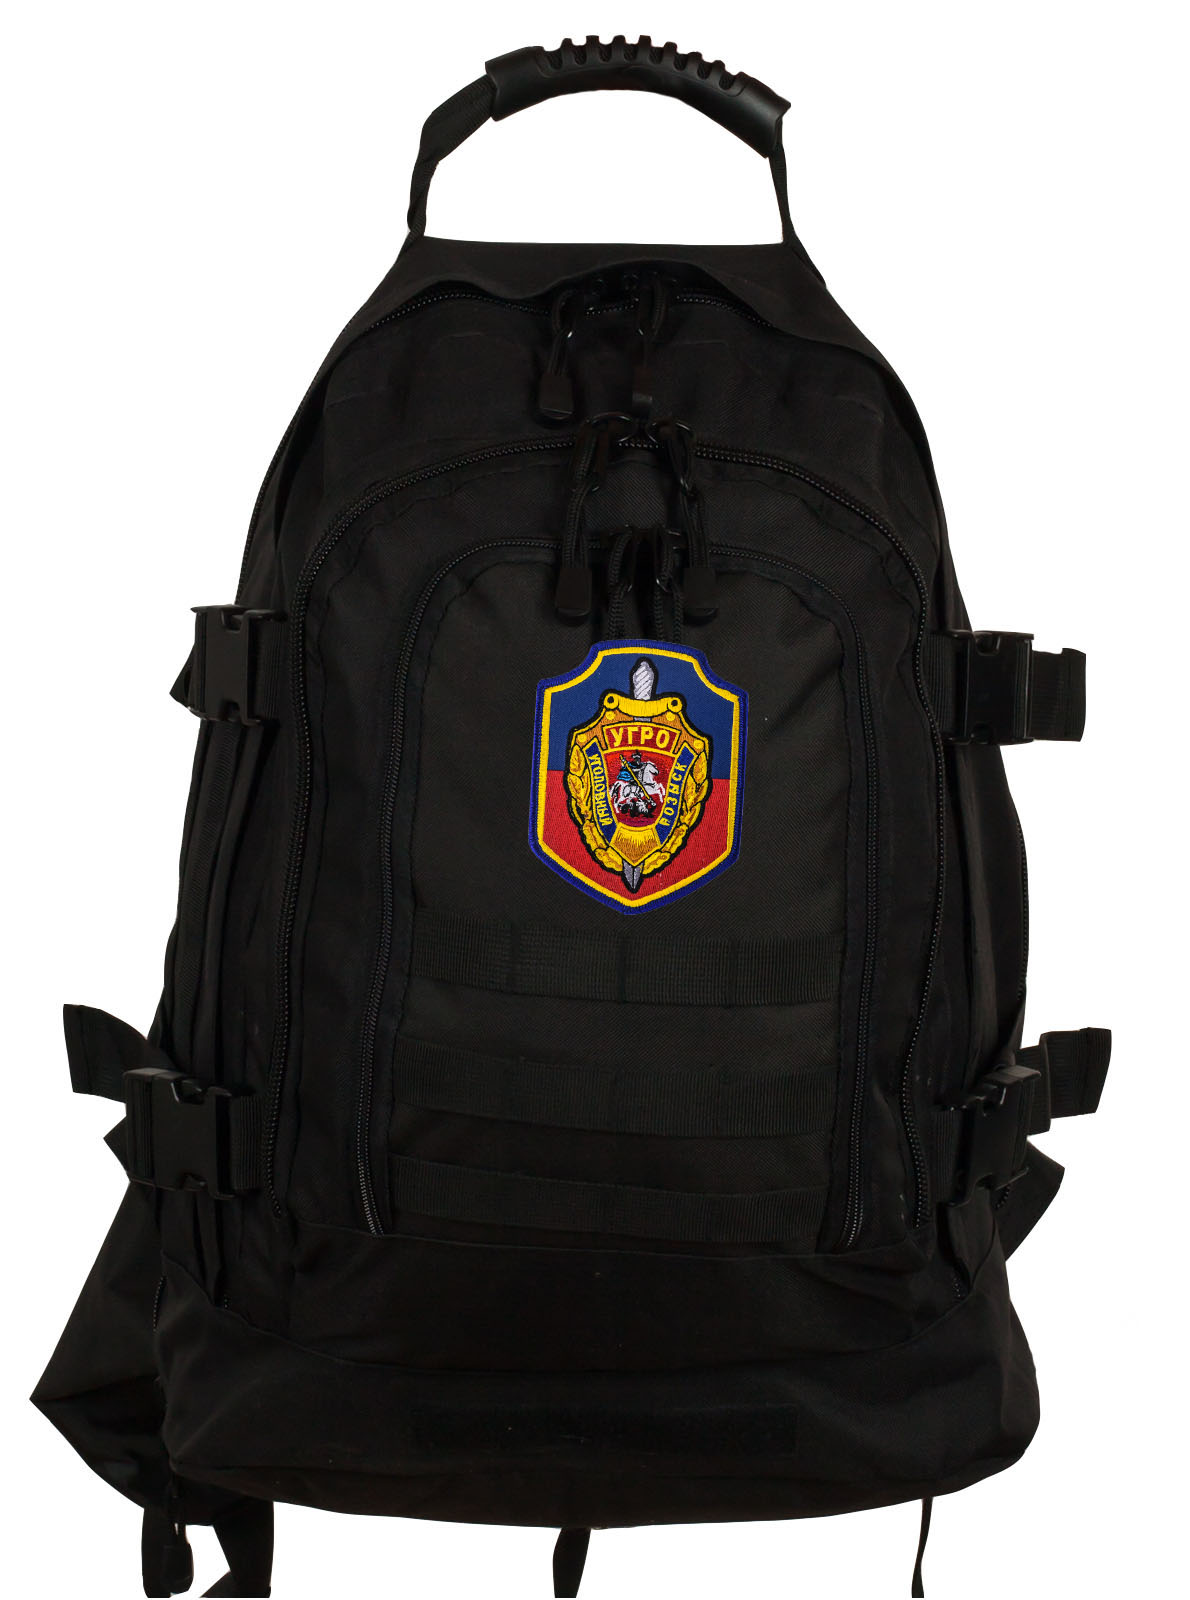 Штурмовой удобный рюкзак с нашивкой УГРО 